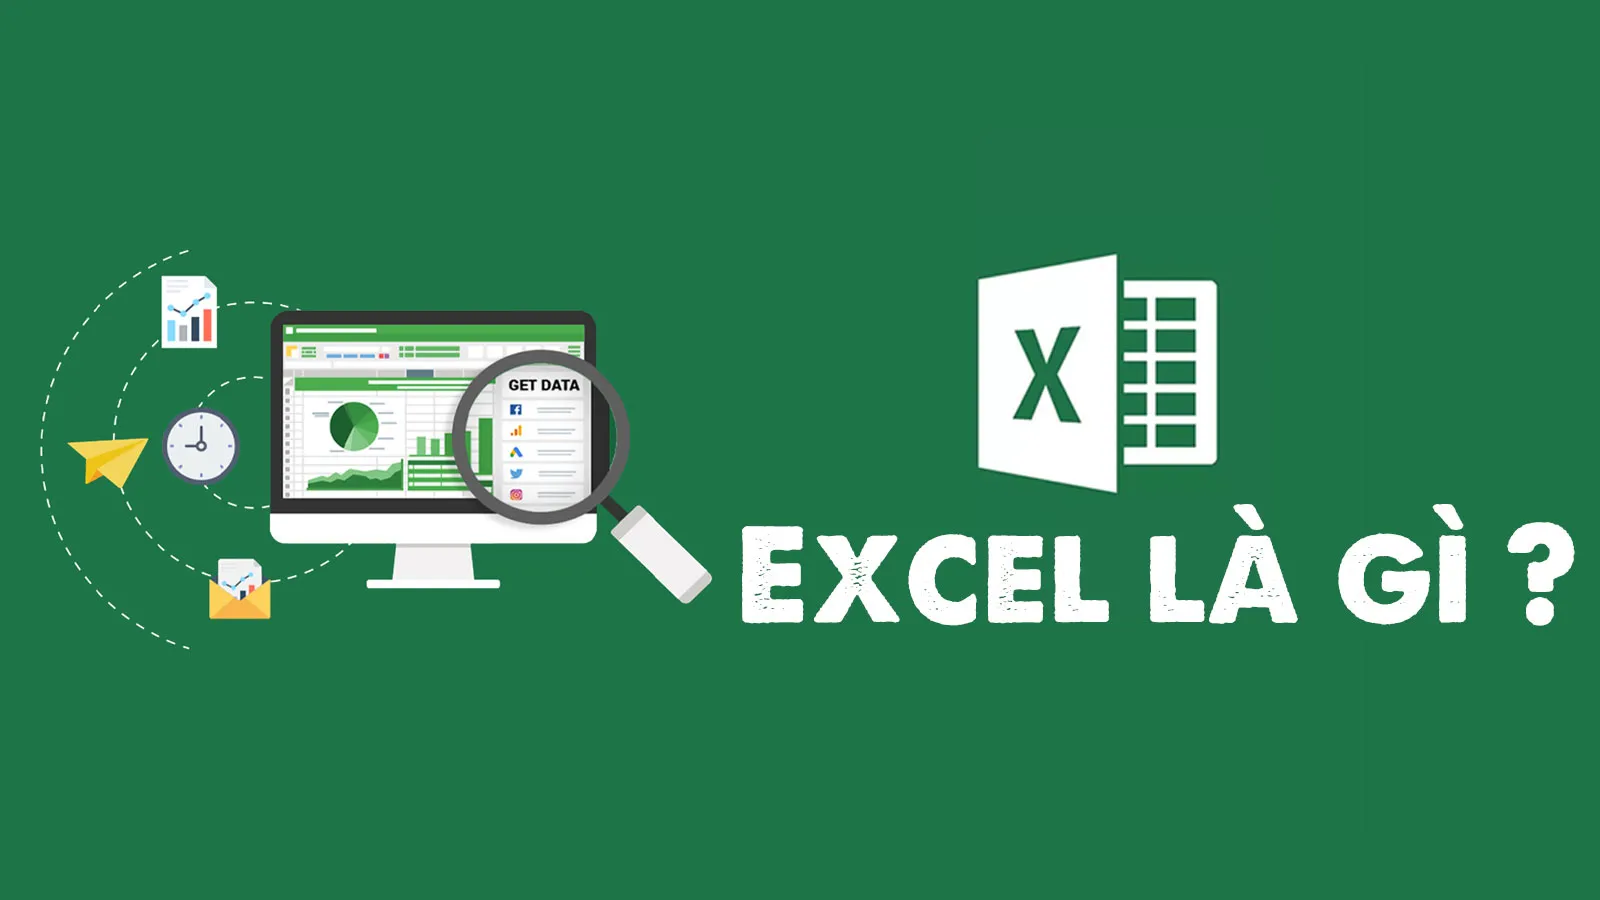 Excel là gì? Những ngành nghề nào cần dùng đến Excel?